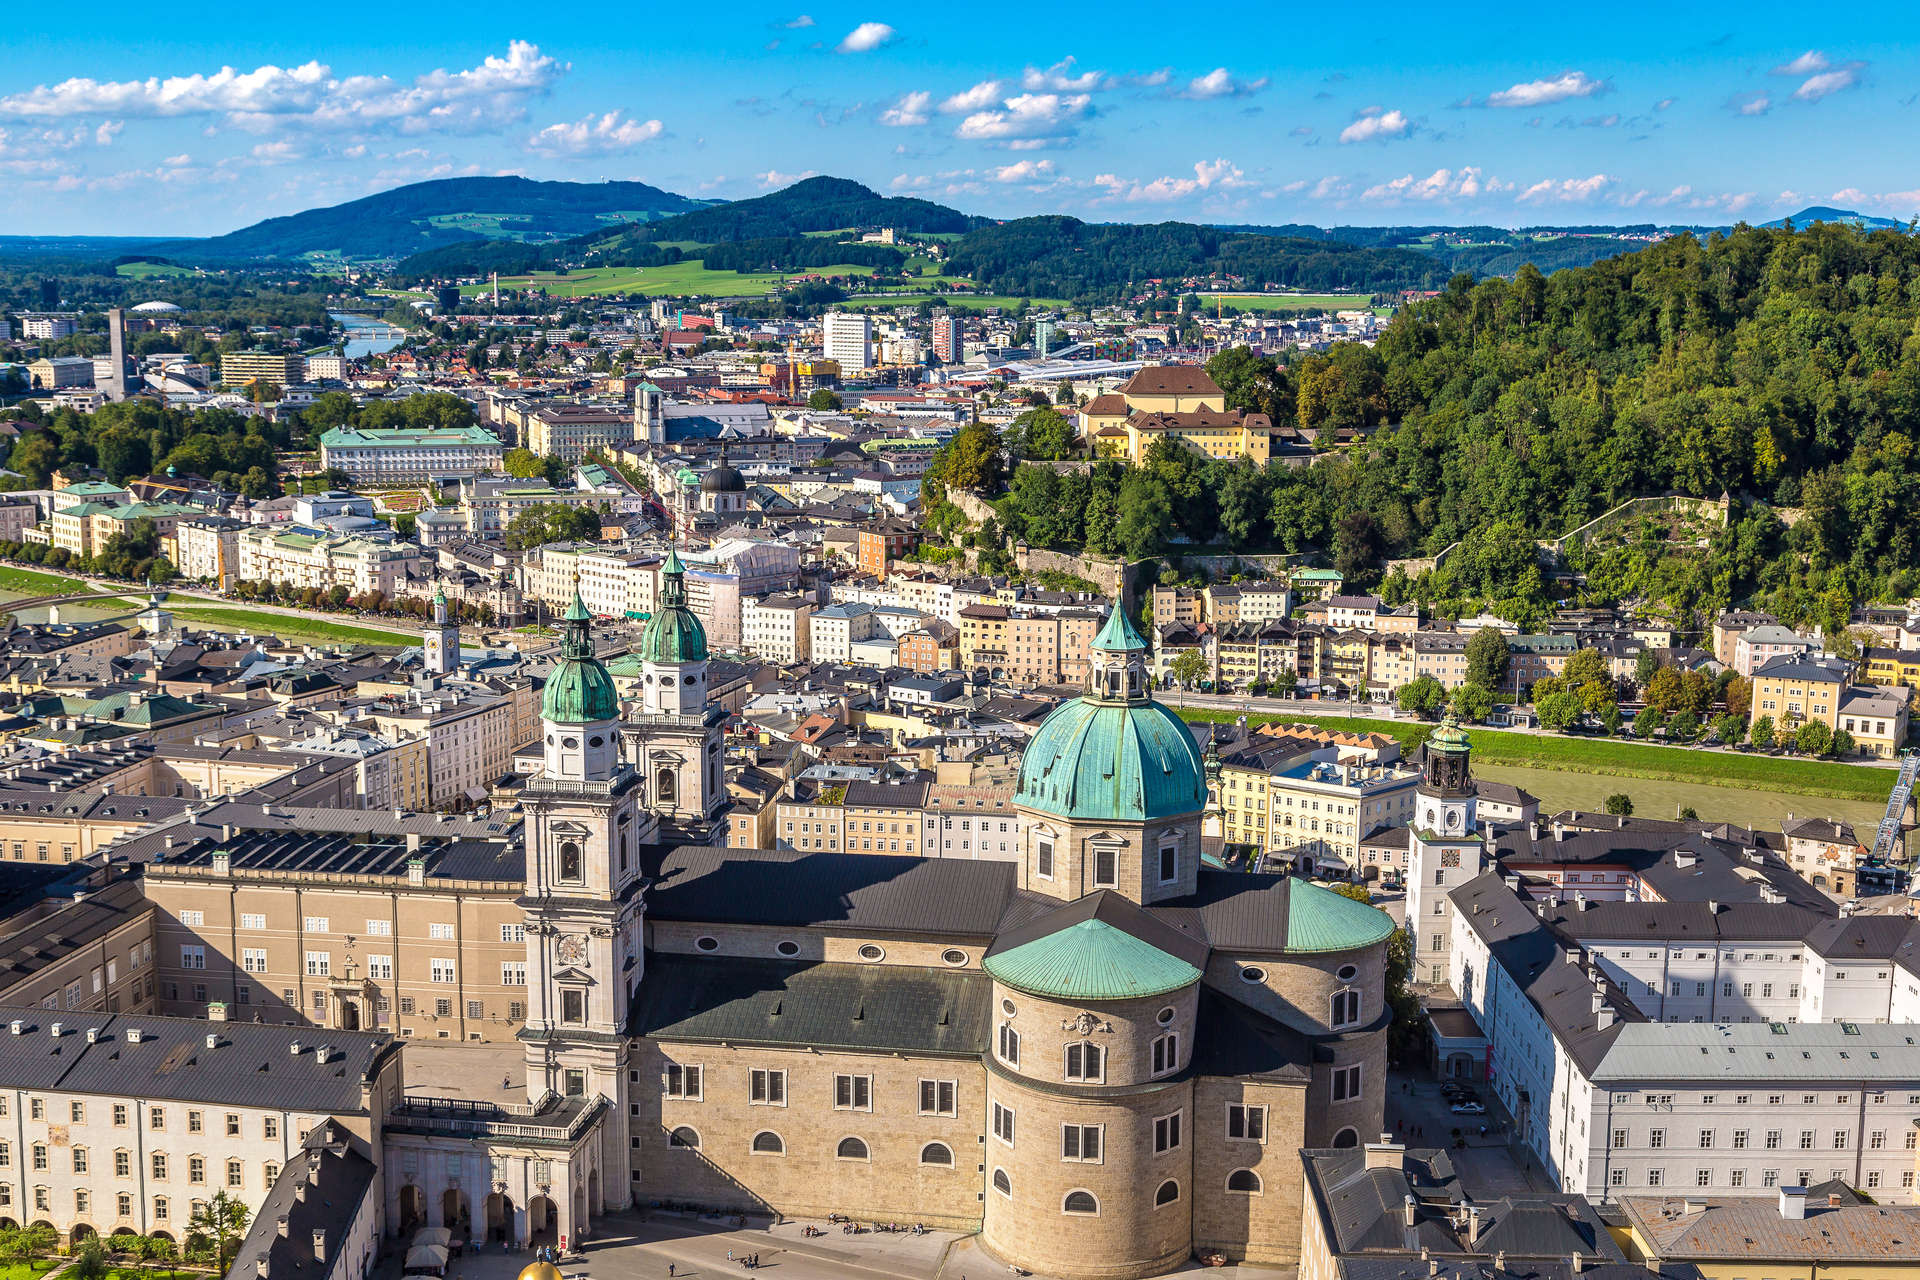 Salzburg's Altstadt